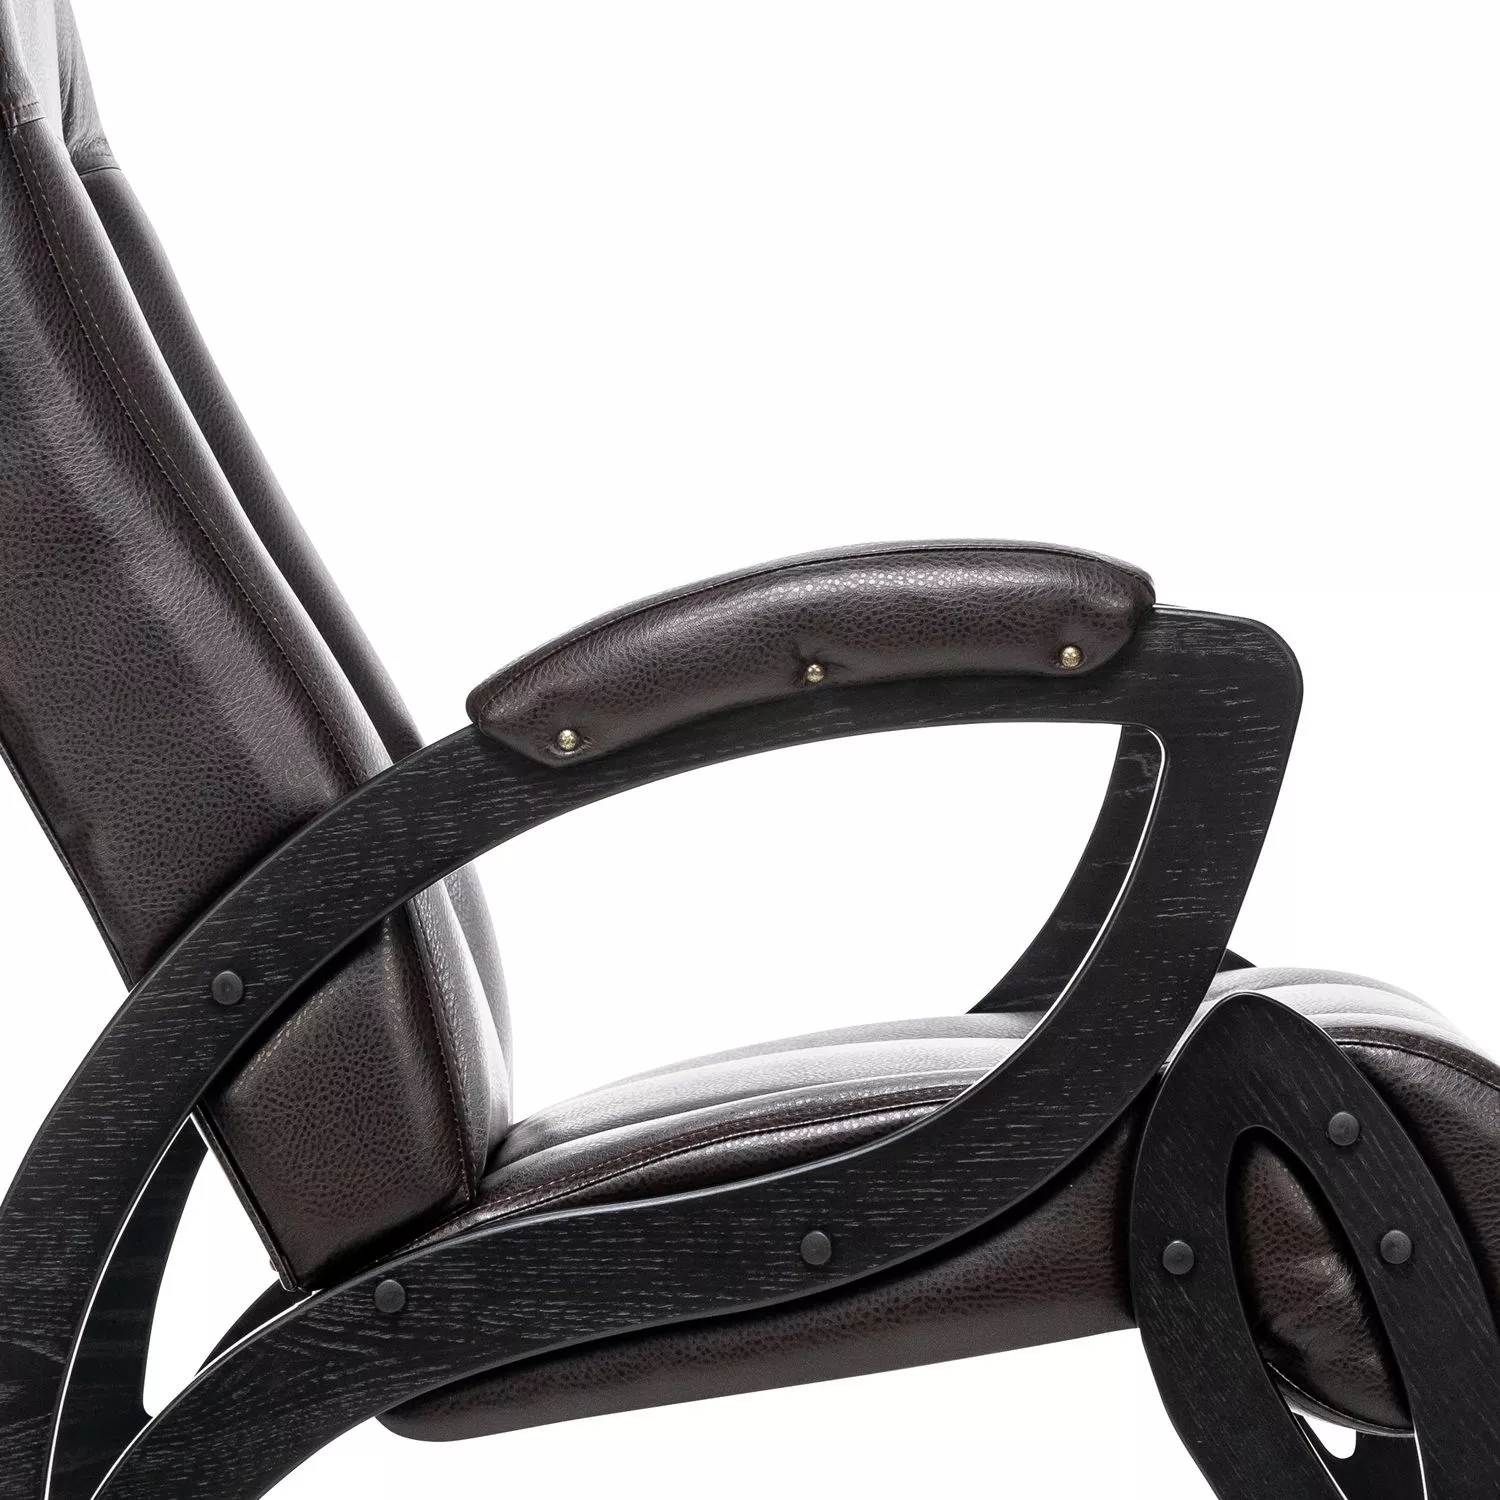 Кресло для отдыха Модель 51 Vegas Lite Amber / Венге